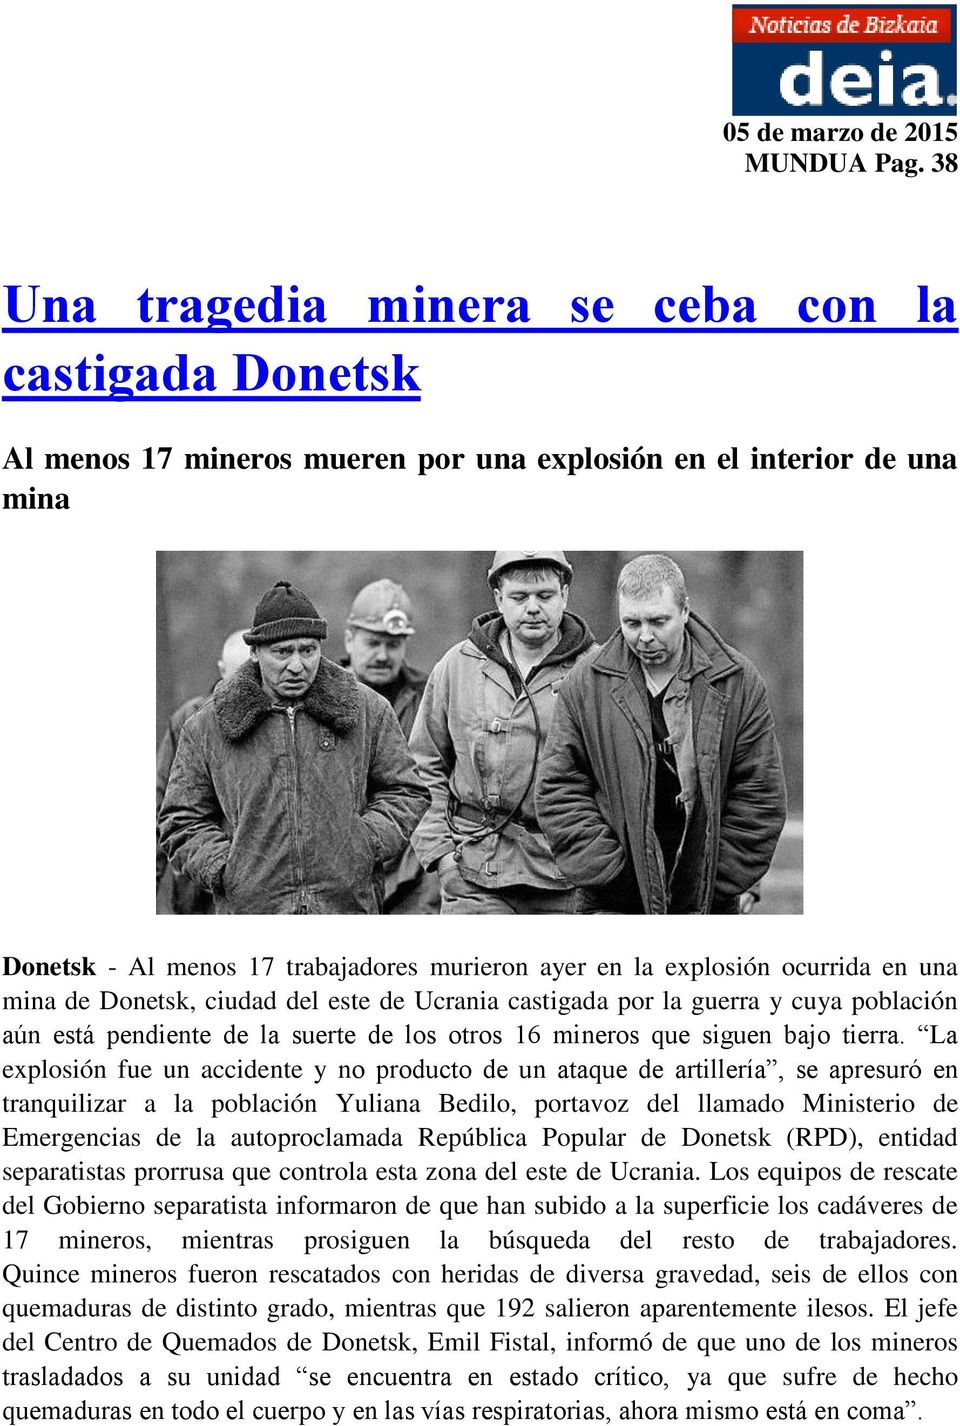 ocurrida en una mina de Donetsk, ciudad del este de Ucrania castigada por la guerra y cuya población aún está pendiente de la suerte de los otros 16 mineros que siguen bajo tierra.